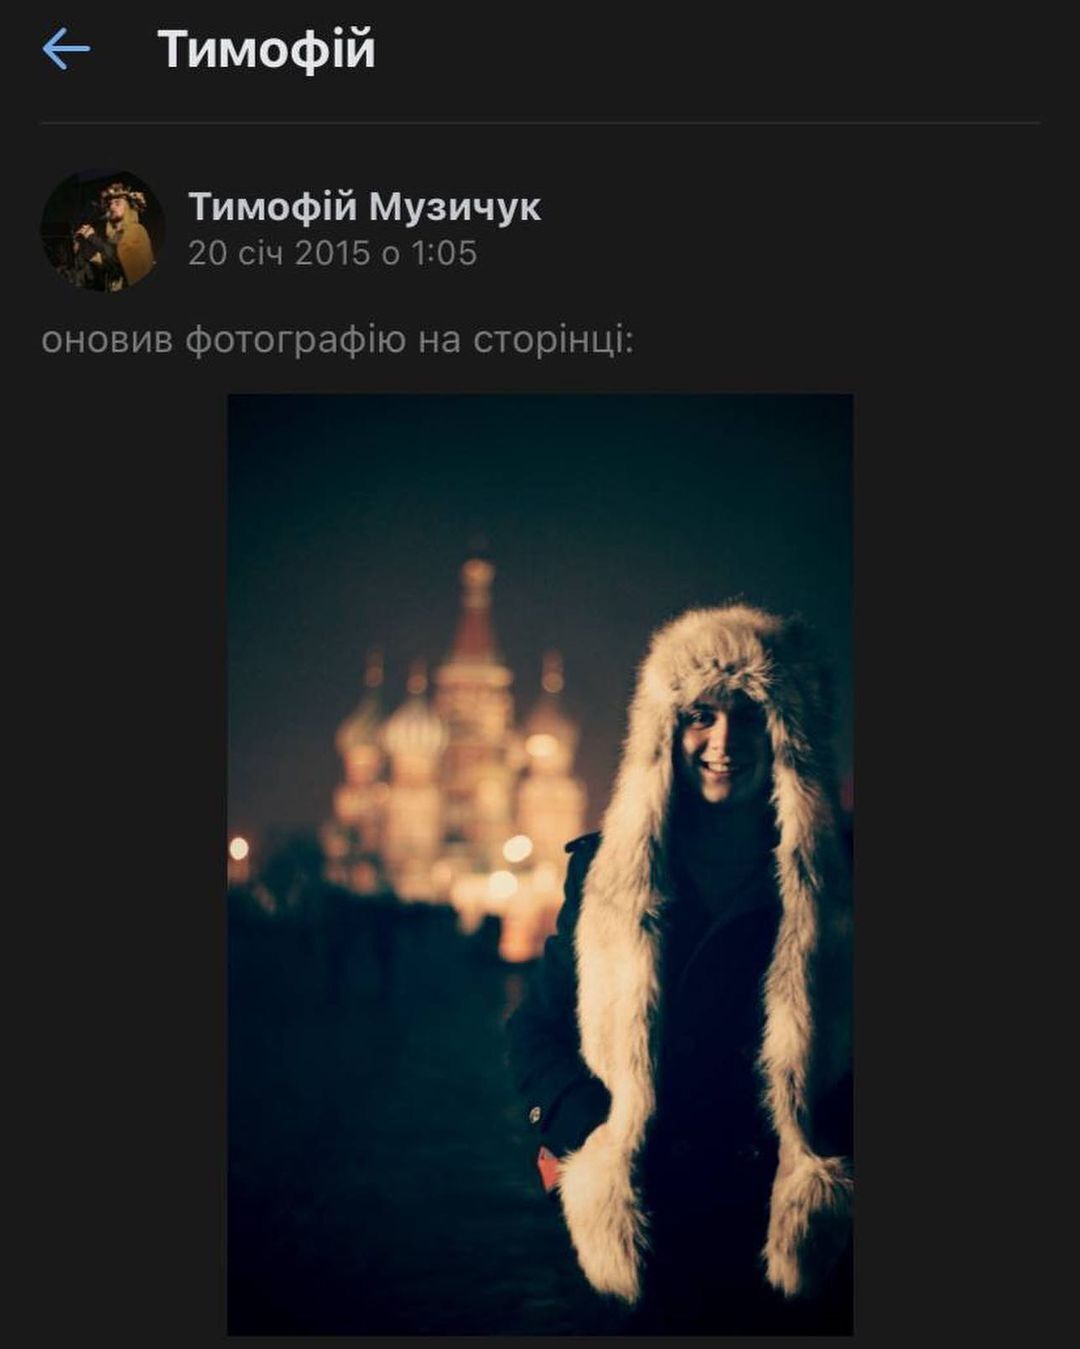 Тимофей Музычук ездил в Россию